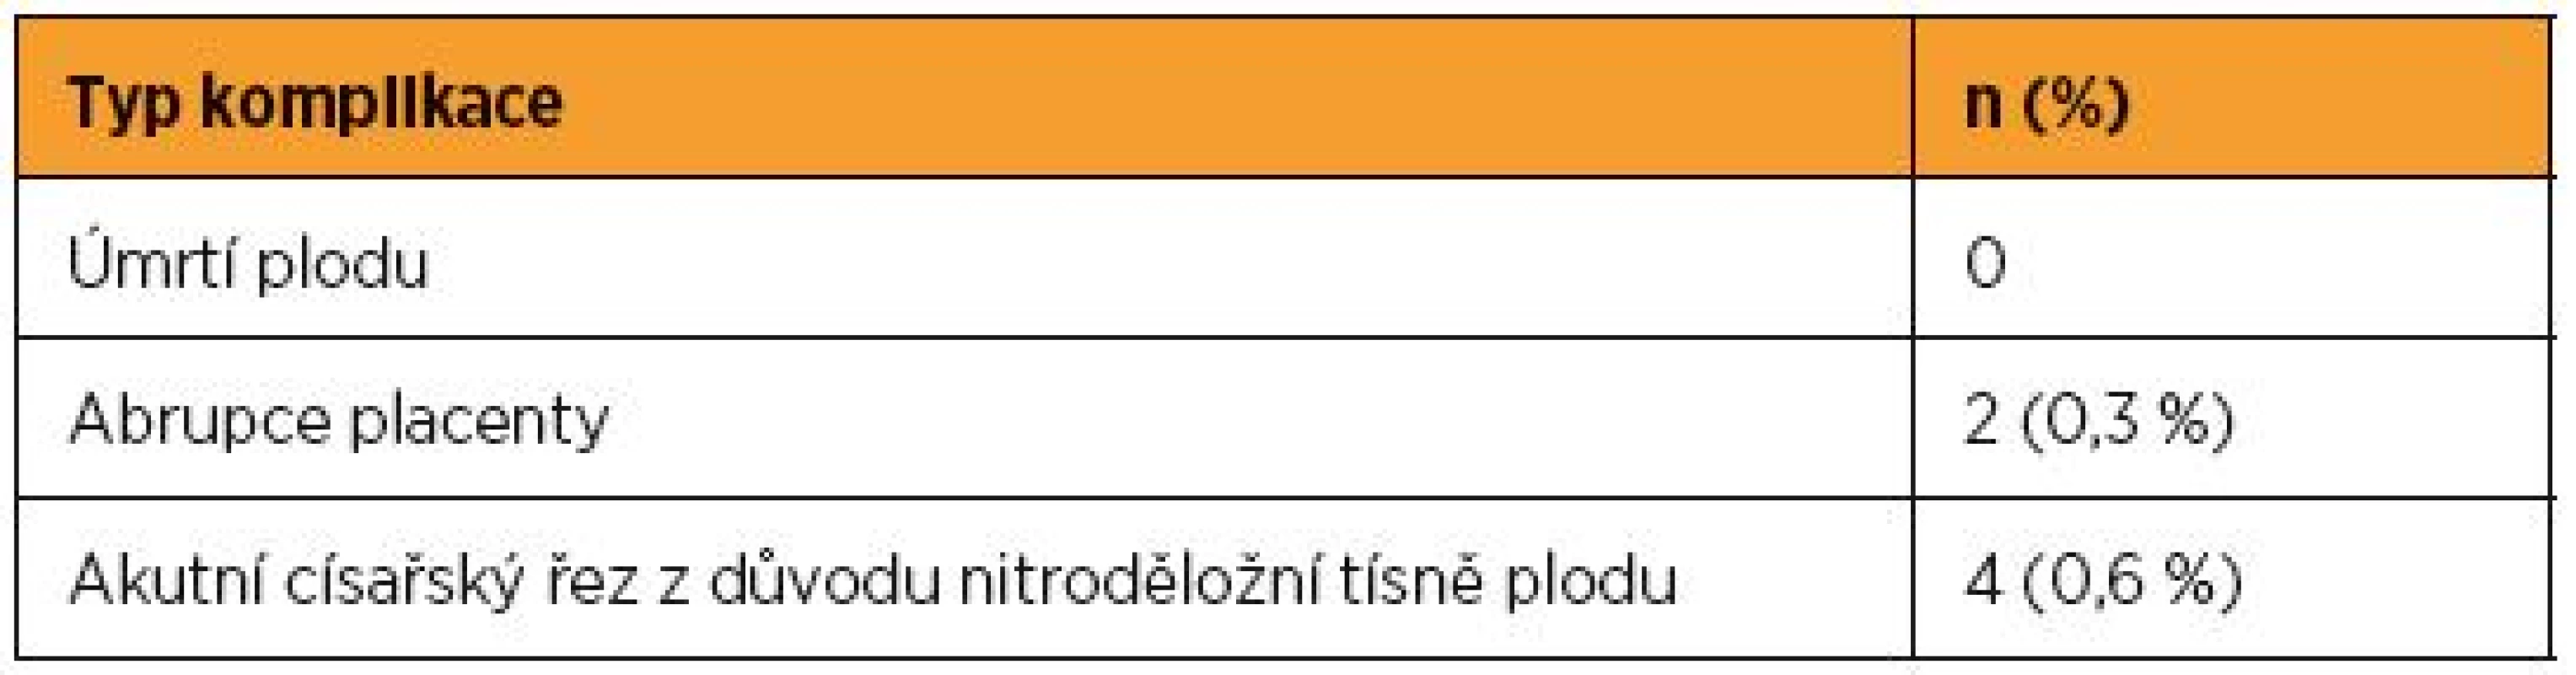 Závažné komplikace v souvislosti se zevním obratem plodu na GPK FN Brno v období let 2003–2016